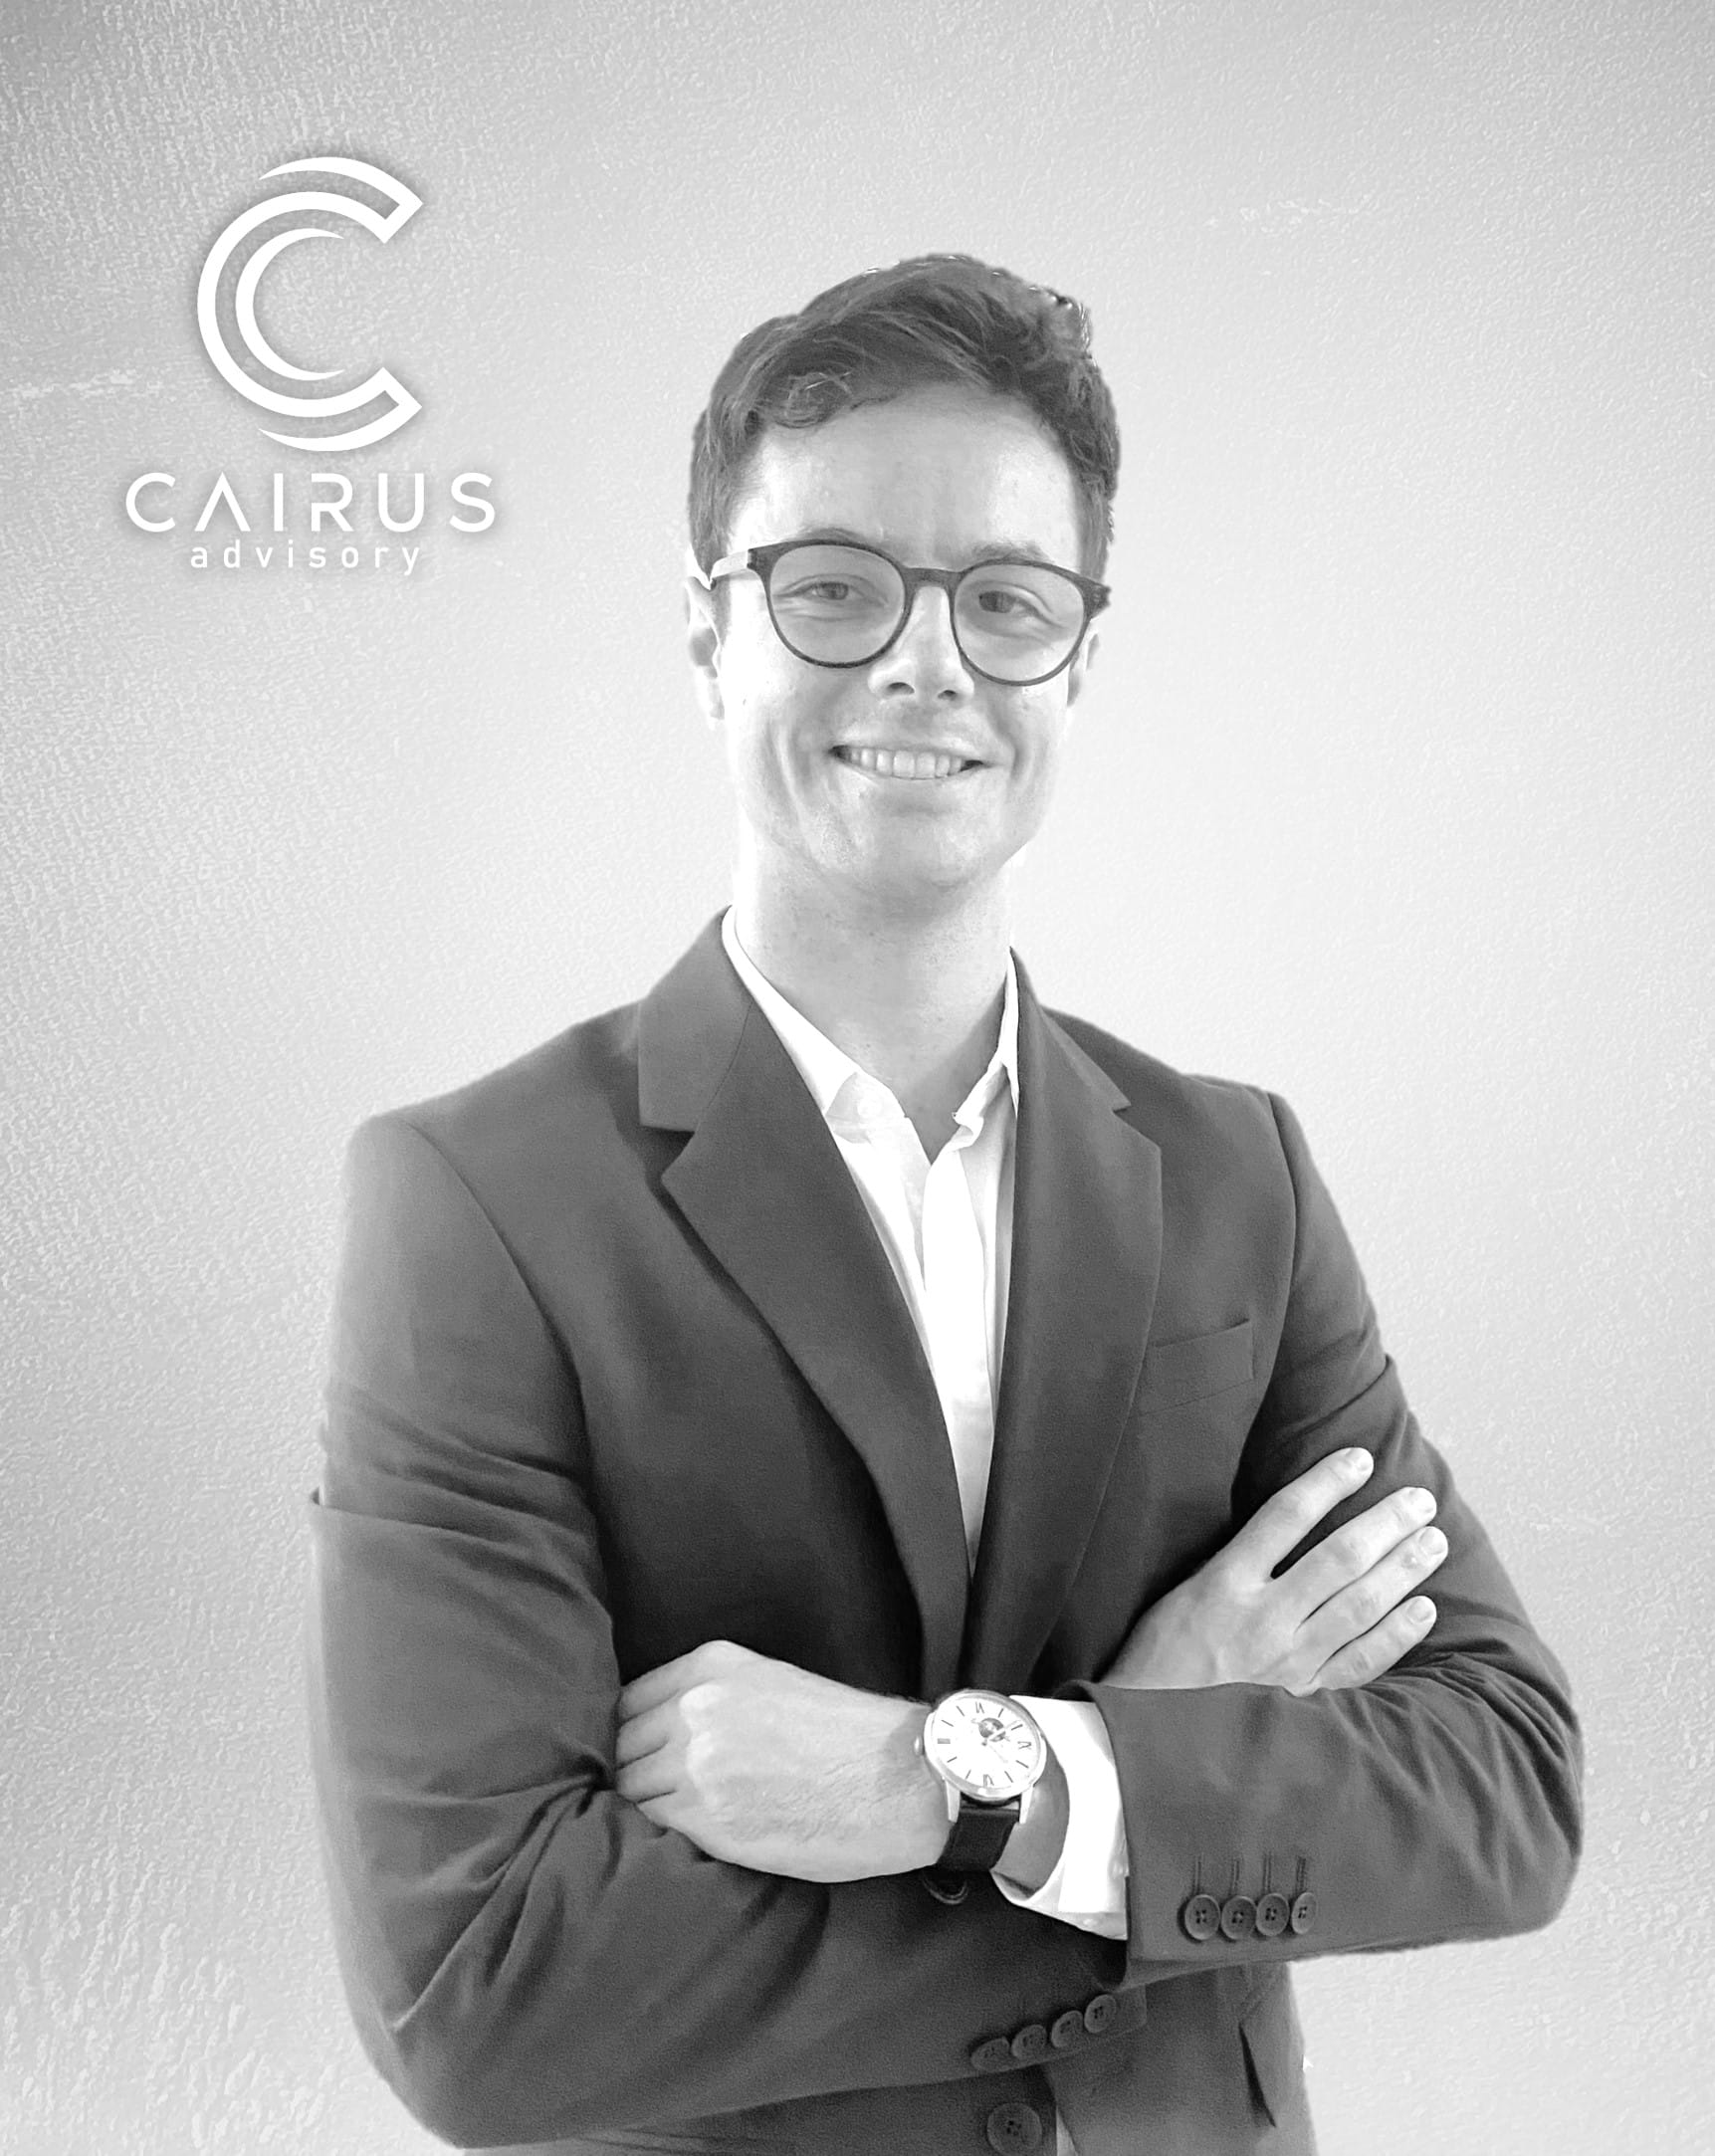 photographie de Hugo ROMANO, Chargé d'affaires M&A chez Cairus Advisory